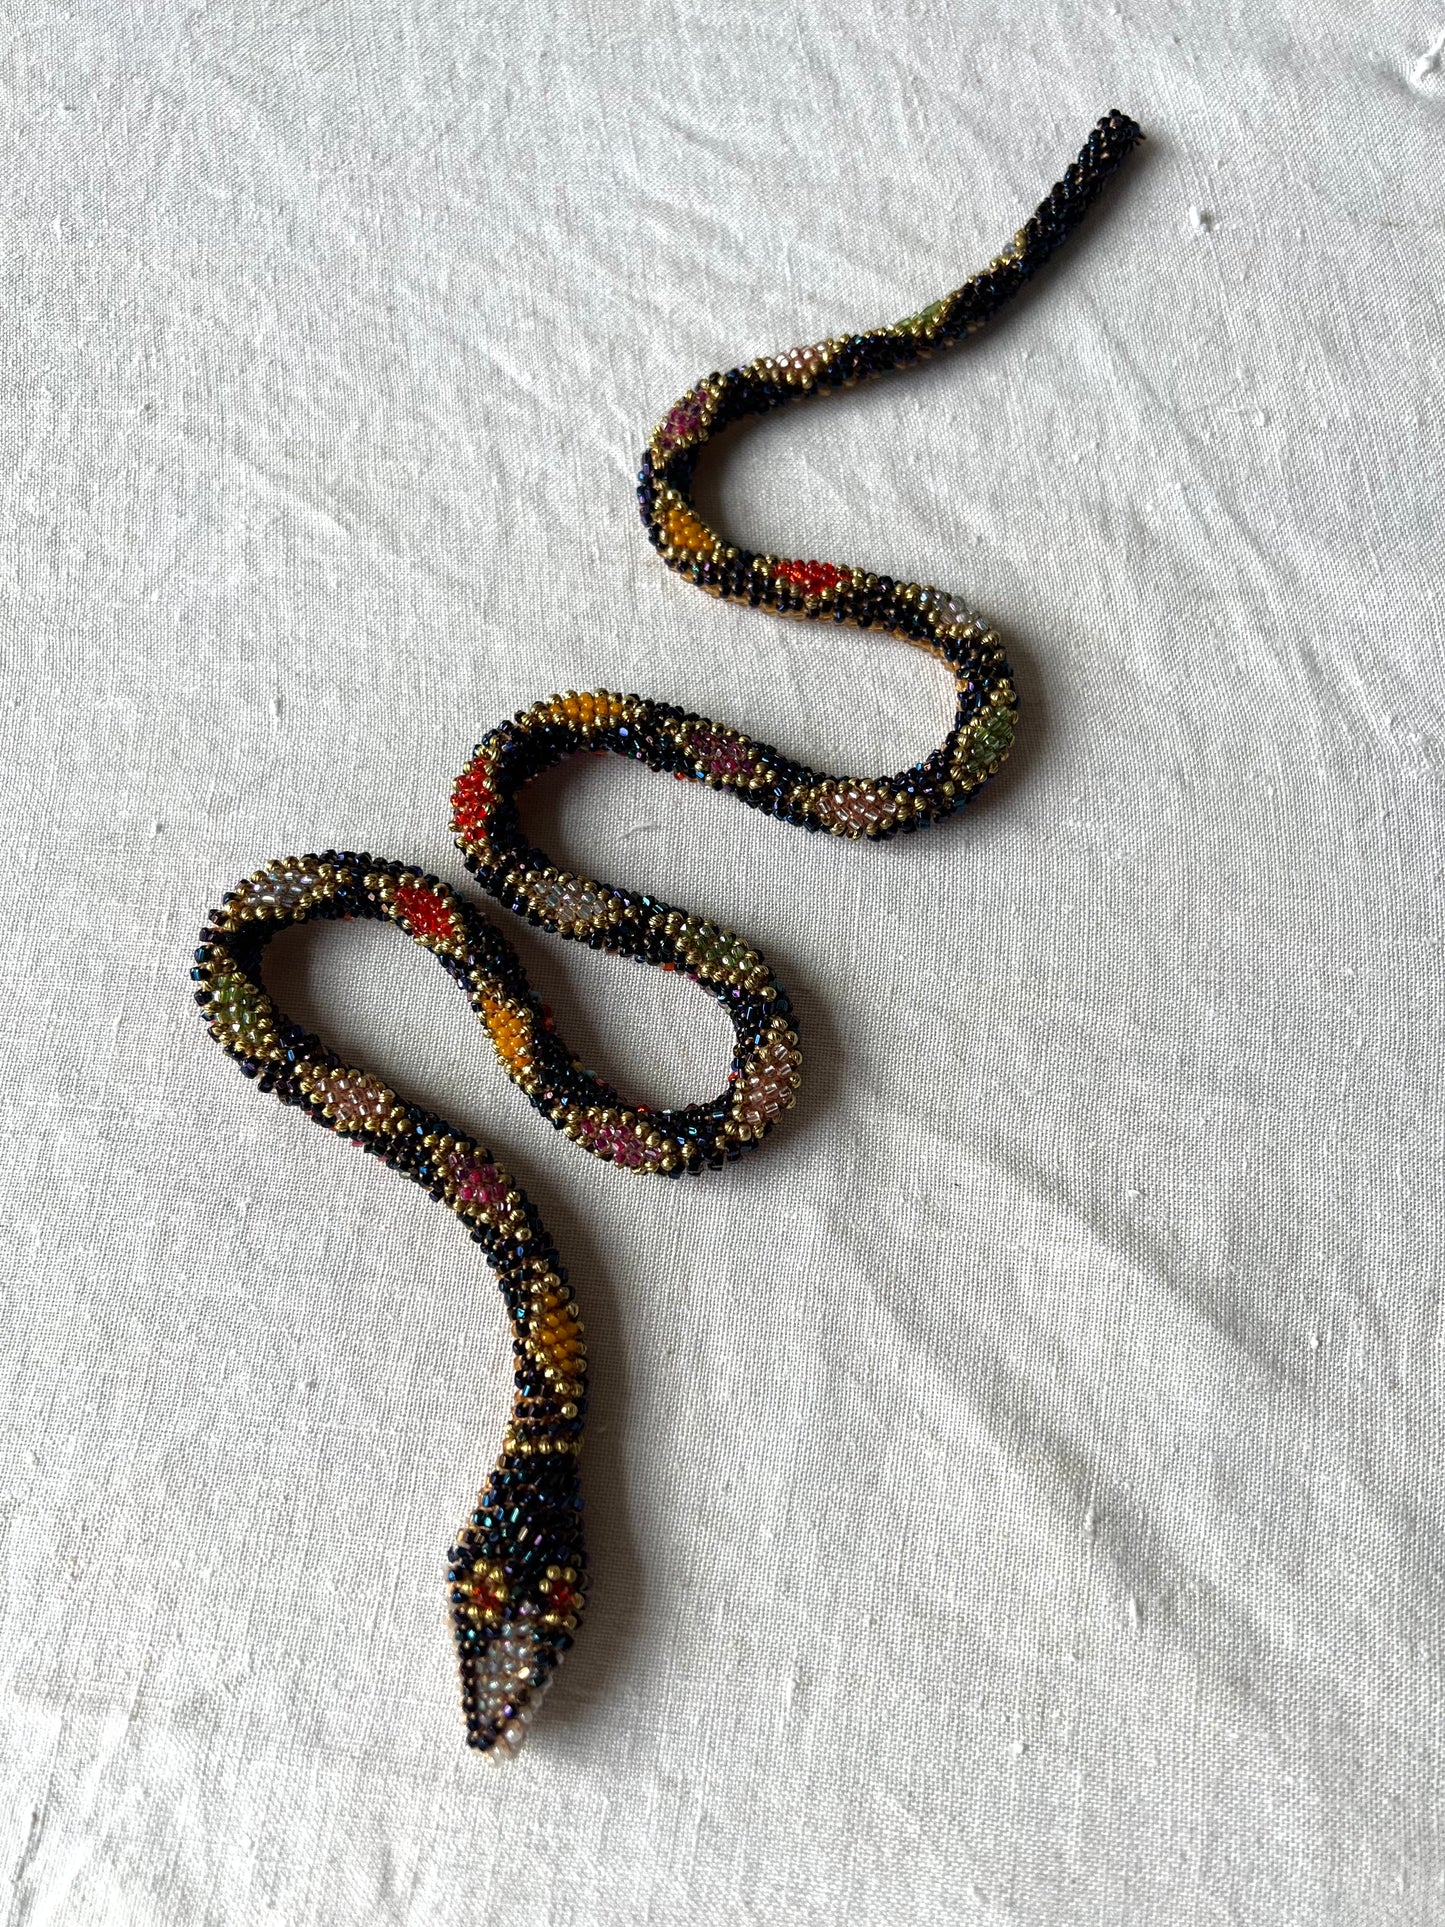 Bead Crochet Snake | Oil Slick